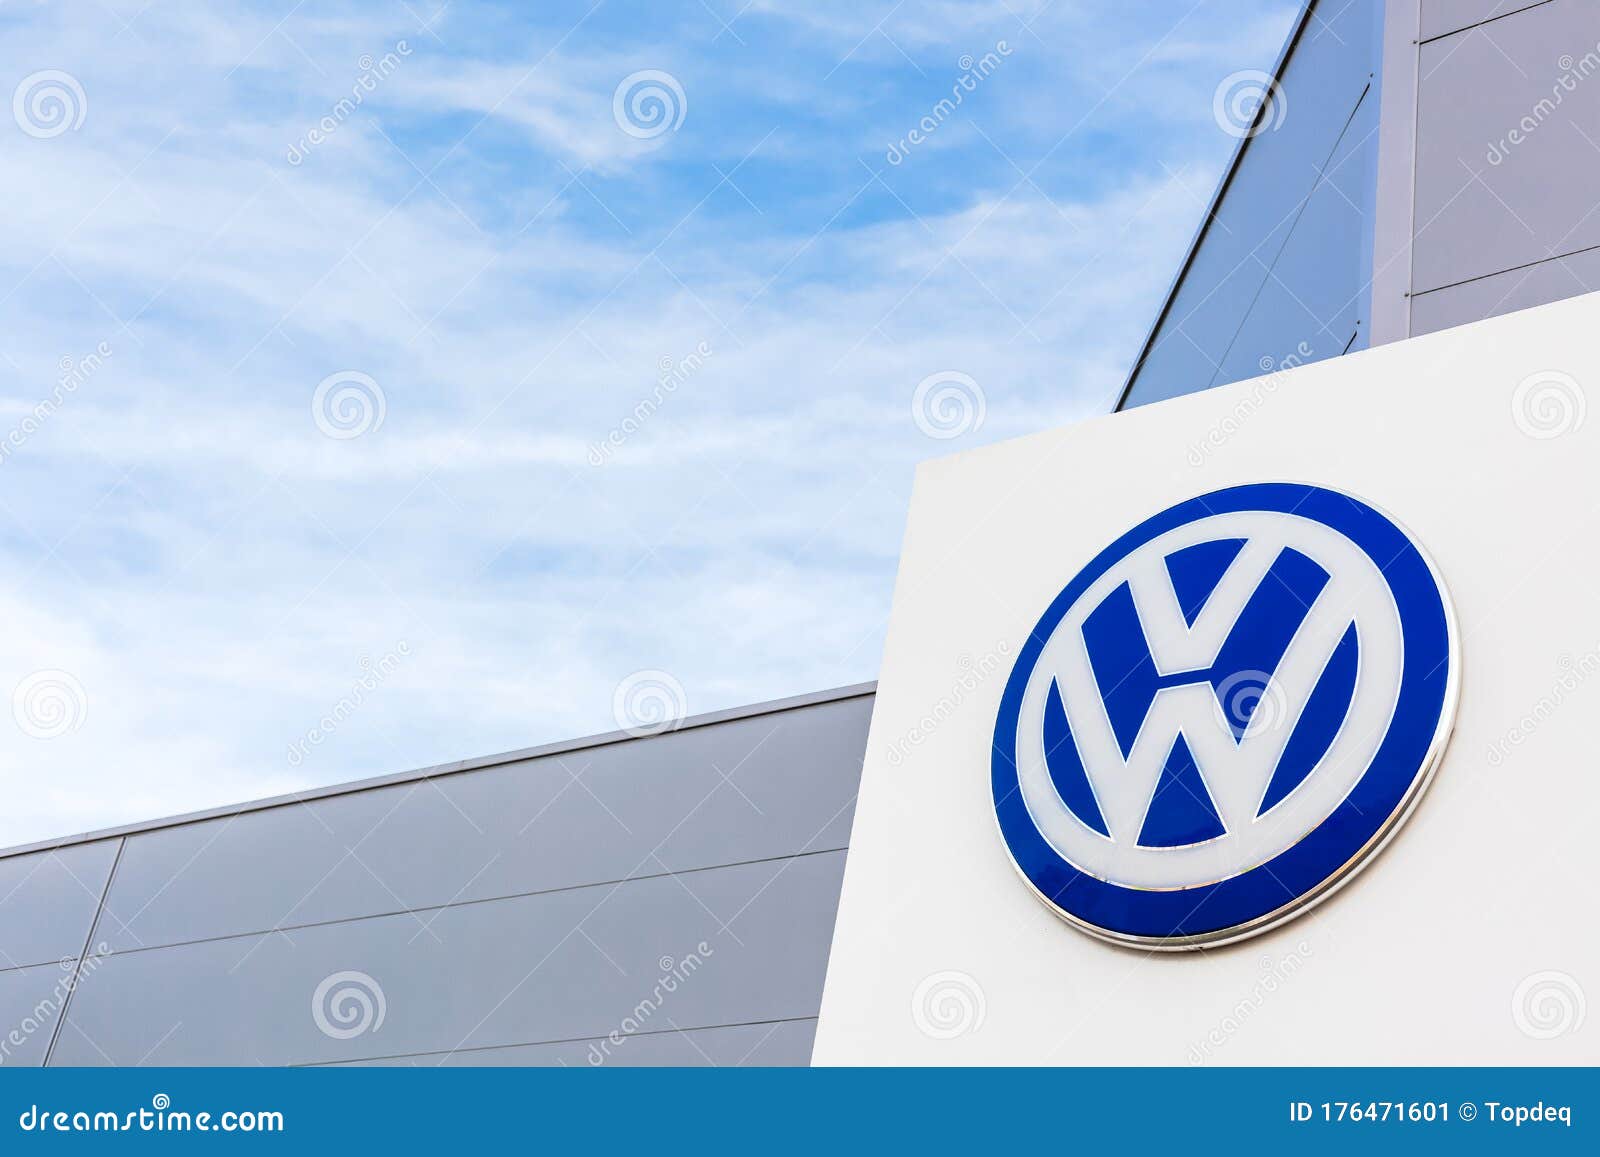 Thương hiệu Volkswagen từ lâu đã được yêu thích bởi sự độc đáo và đẳng cấp của các sản phẩm của mình. Với thiết kế đơn giản và tinh tế, xe Volkswagen mang lại cảm giác sang trọng và hiện đại cho chủ nhân của nó. Xem ngay hình ảnh để cảm nhận được phong cách đặc trưng của hãng xe nức tiếng này.